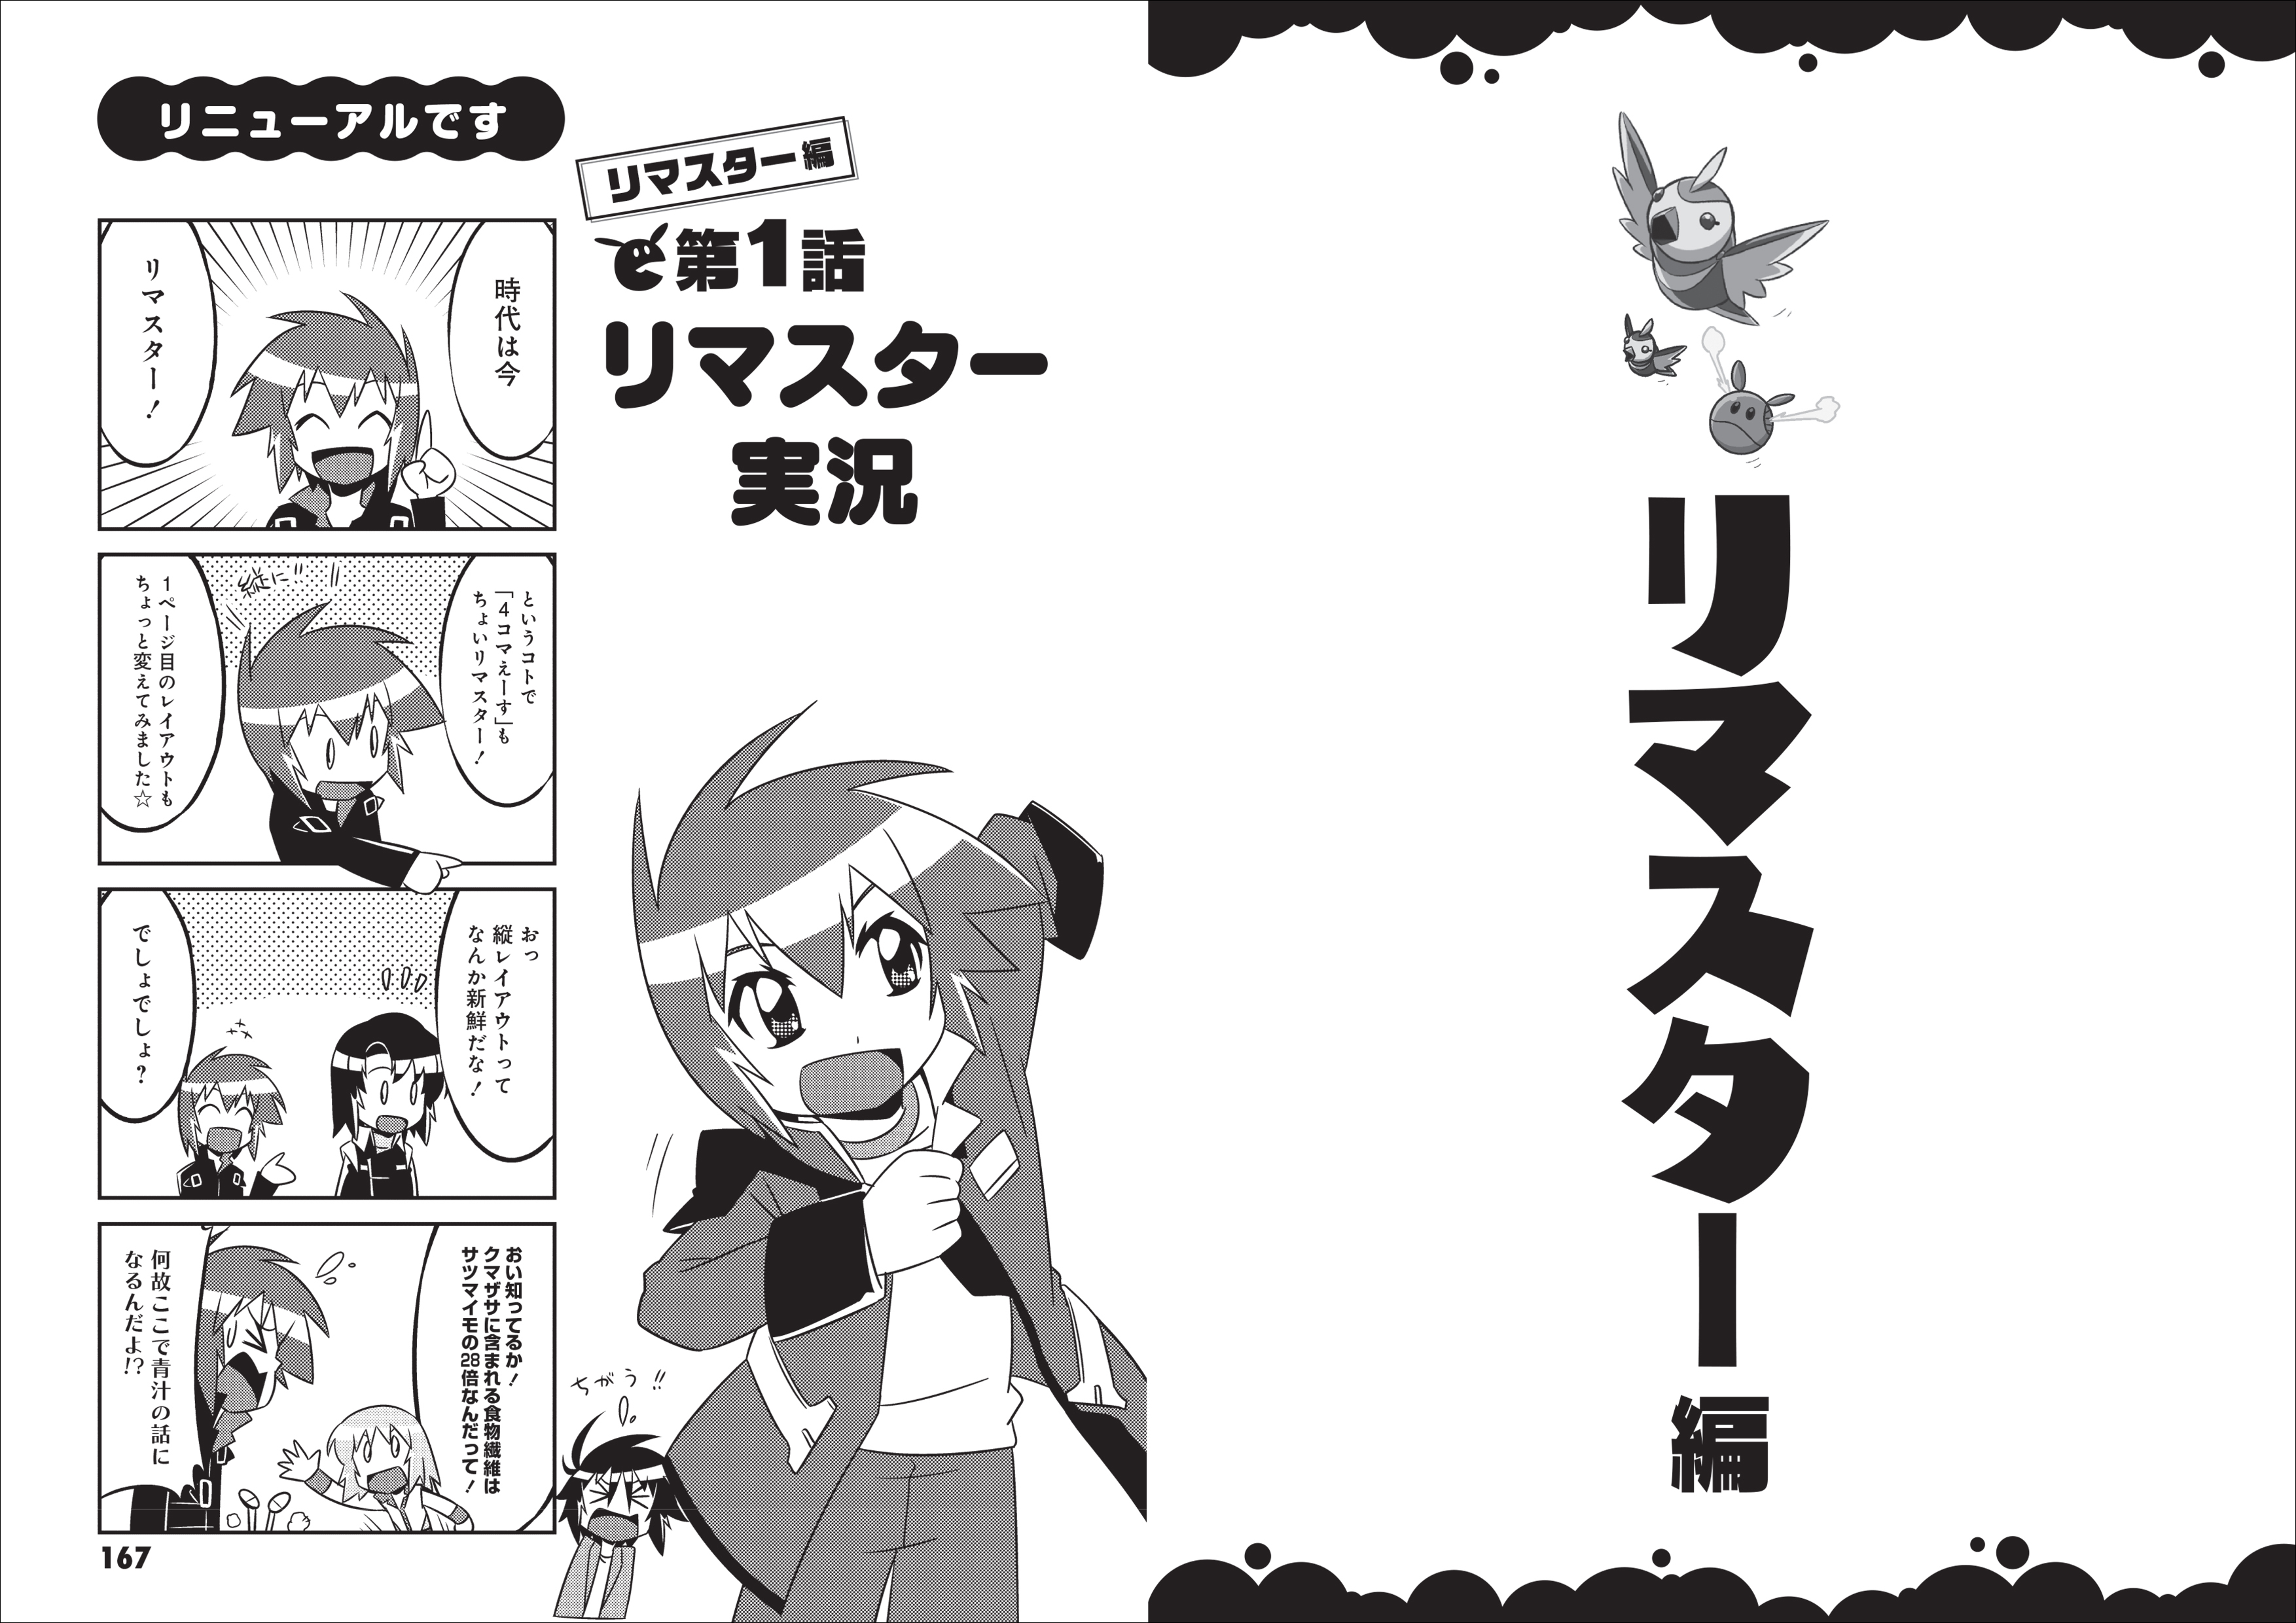 「機動戦士ガンダムSEED 」４コマ漫画が発売の画像